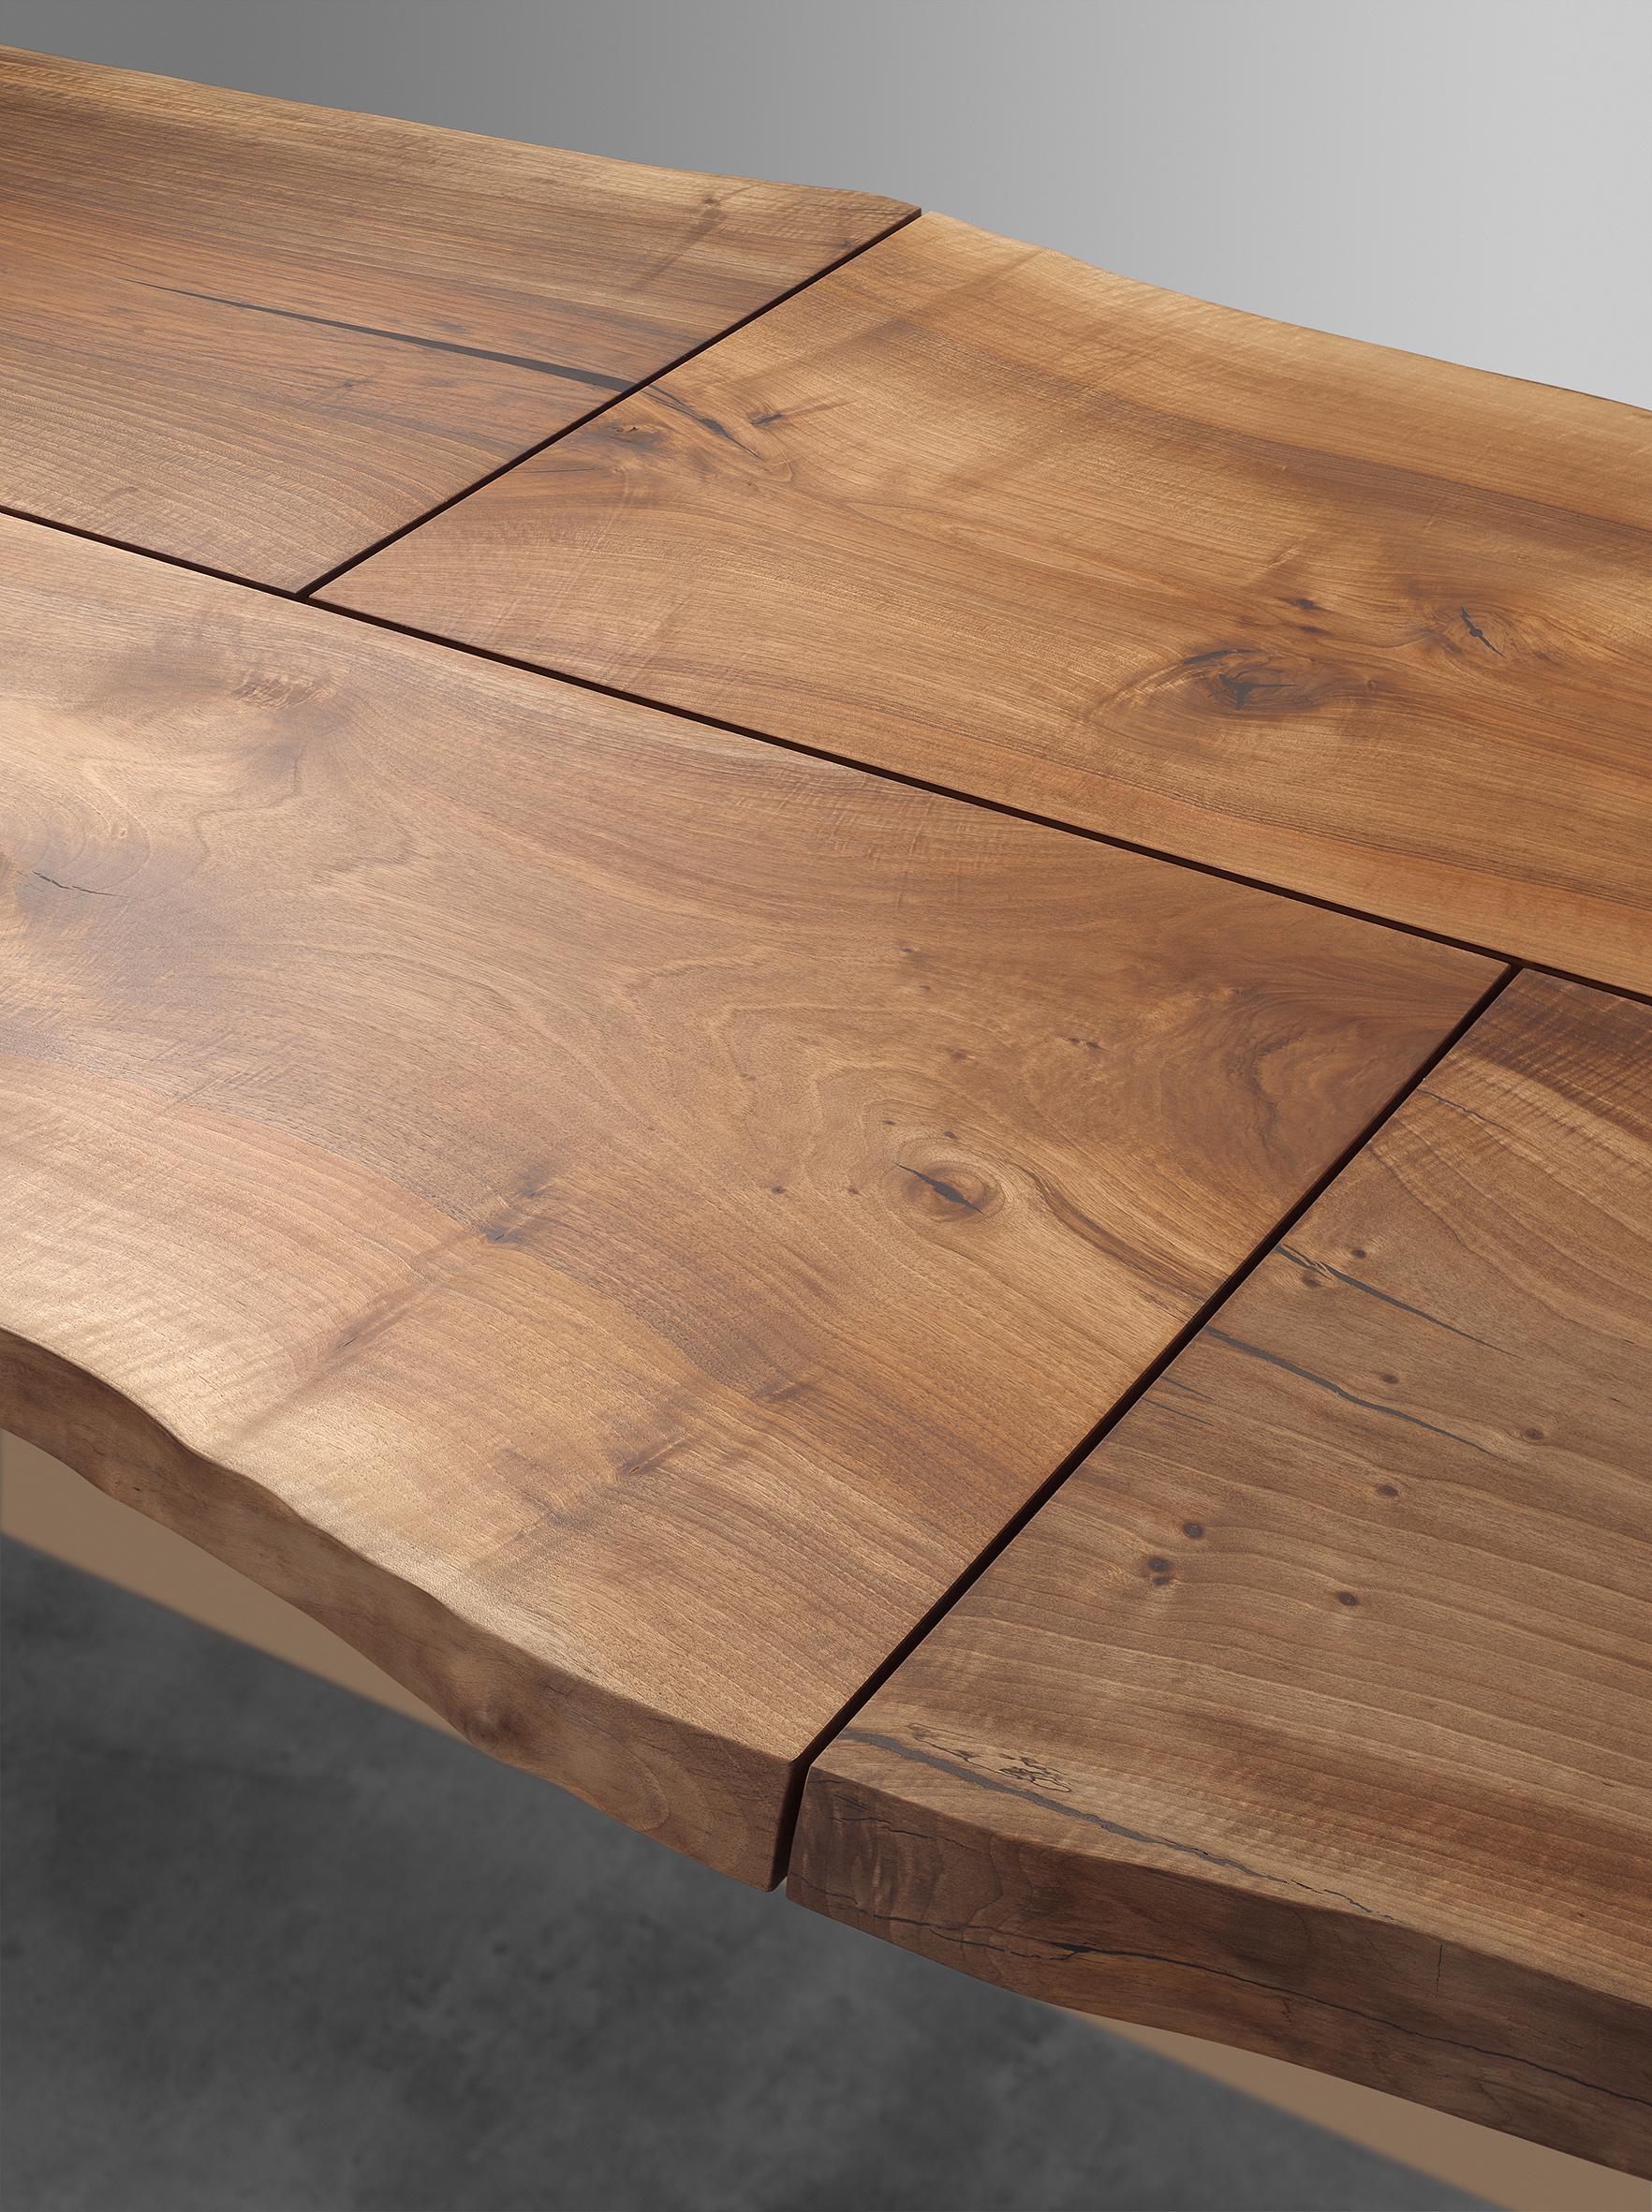 Fabriquée à partir d'un seul tronc de noyer européen choisi individuellement, la table Trunk II de 4100 MM (161 3/8 INCH) de long souligne la fusion de l'architecture et de l'artisanat. Flottant sur une base sculpturale en laiton massif, le plateau